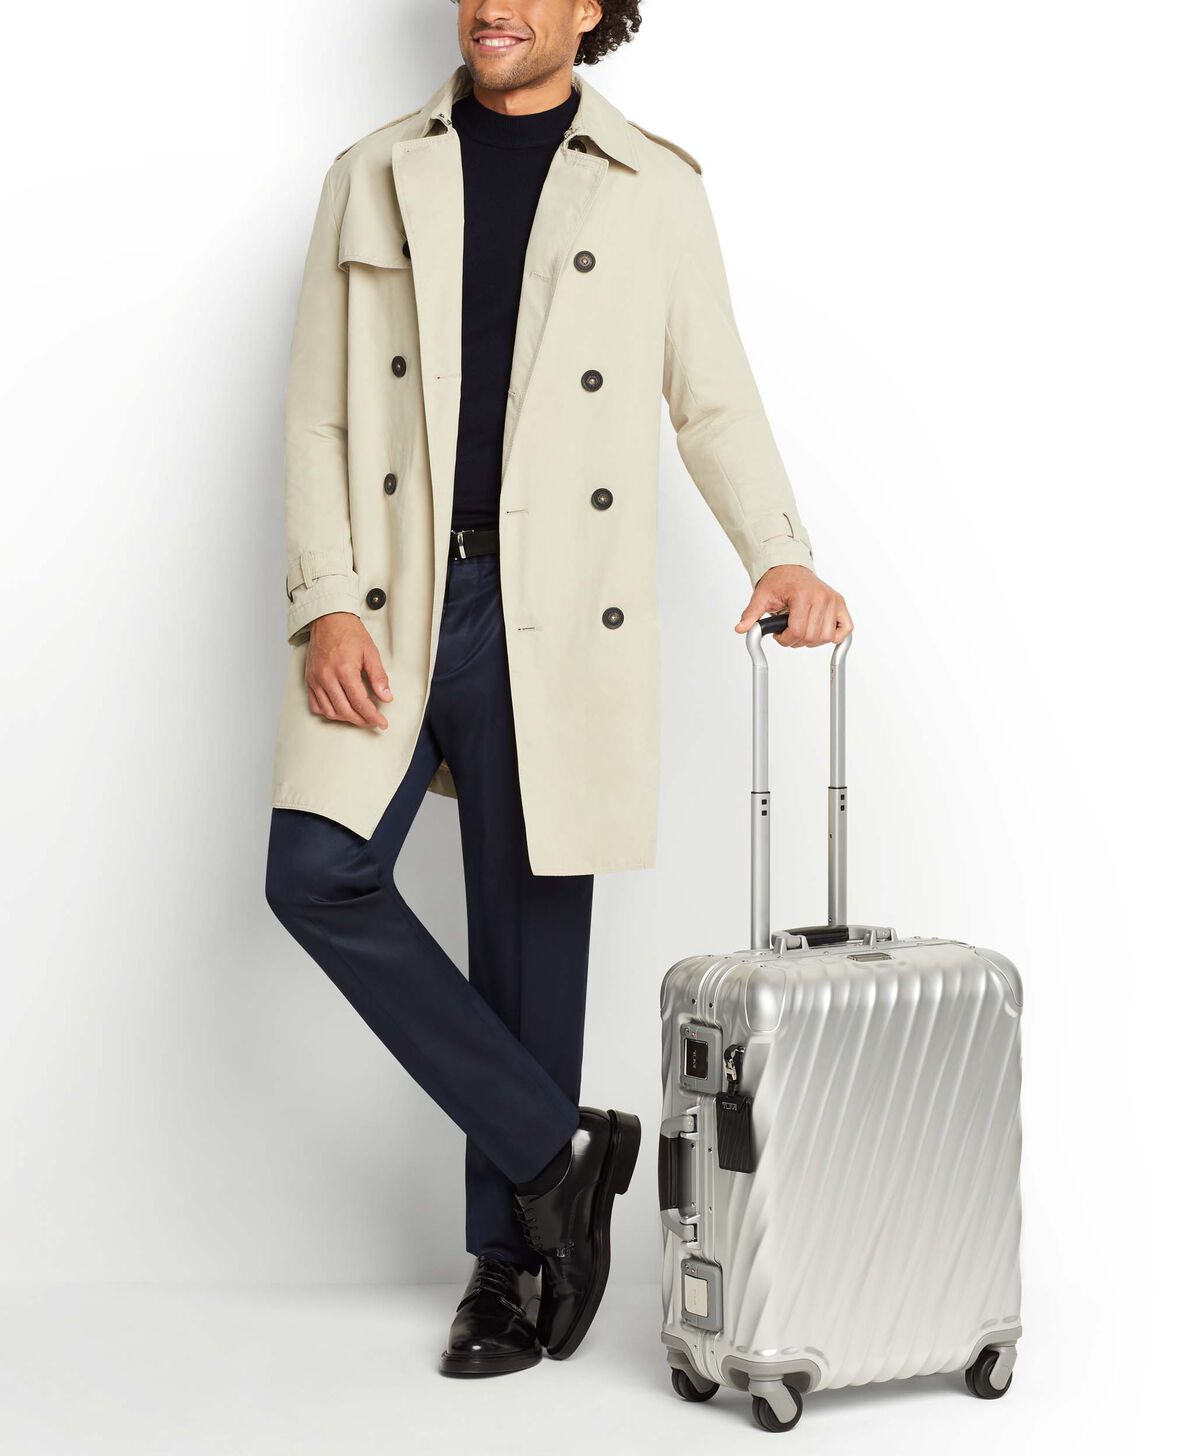 Aluminium Rolling Luggage, Aluminium Travel Suitcase